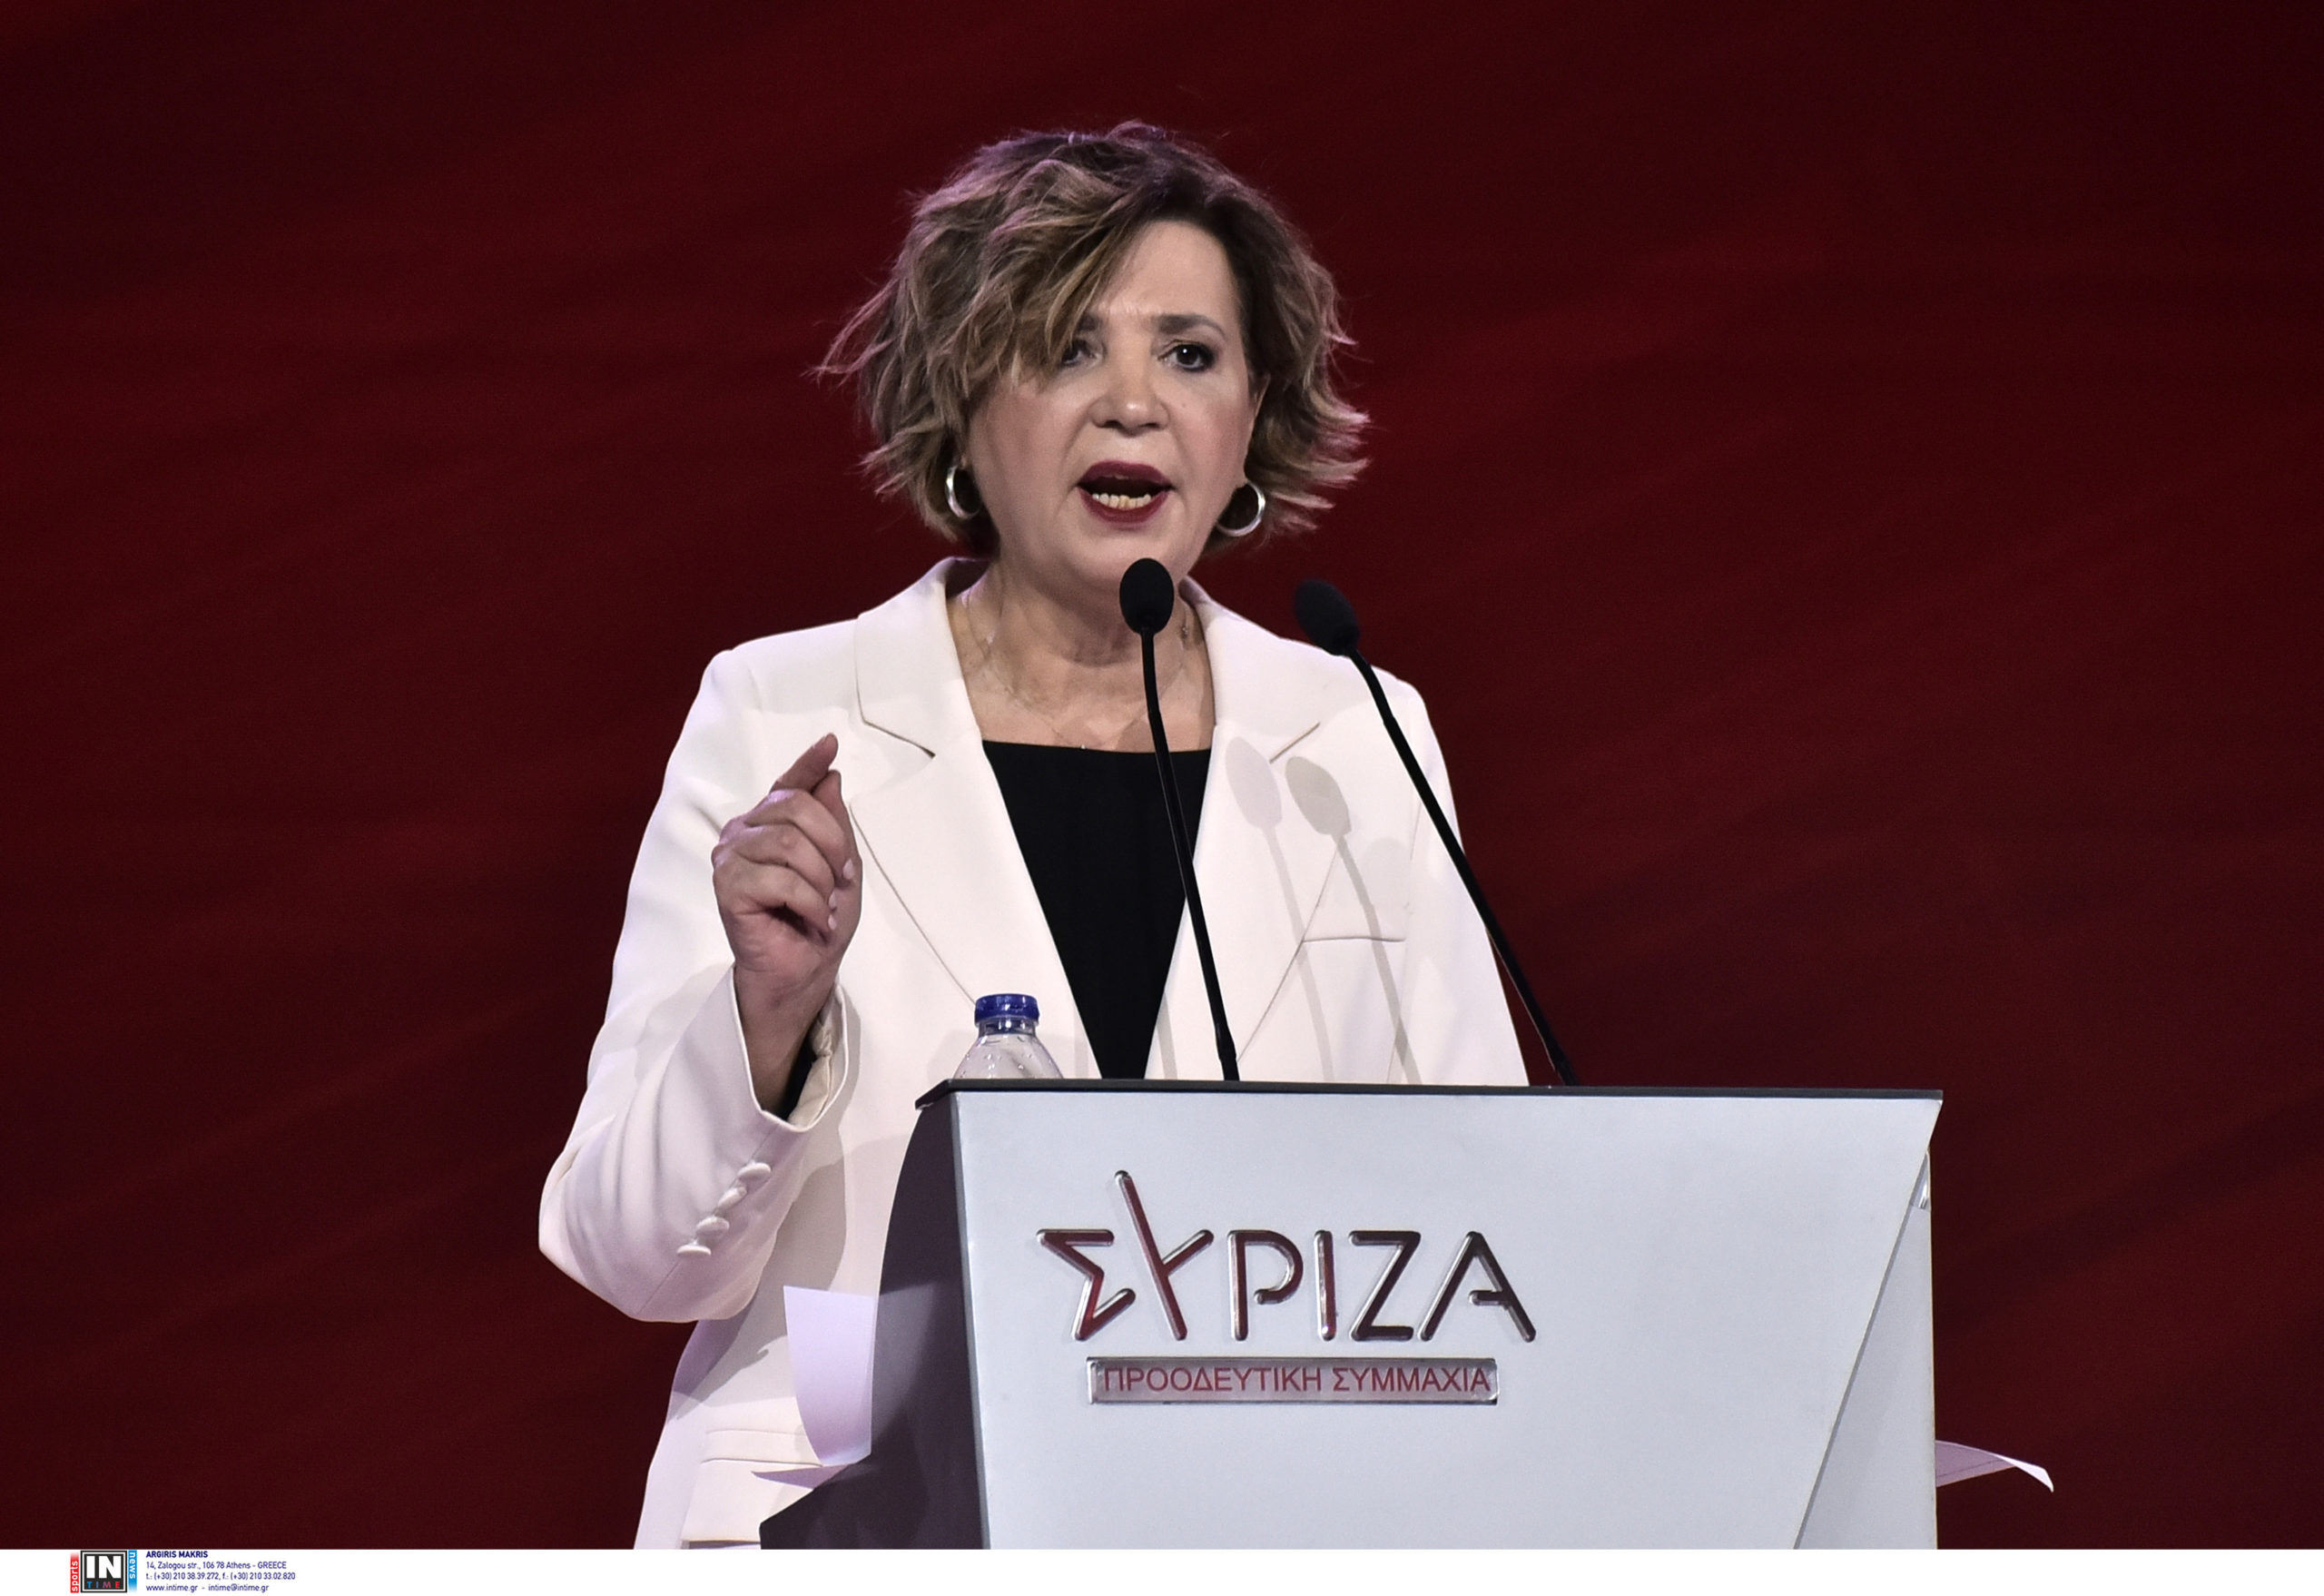 Συνέδριο ΣΥΡΙΖΑ-Όλγα Γεροβασίλη: Εκλογή αρχηγού σύμφωνα με το καταστατικό, έναν μήνα μετά την προκήρυξη